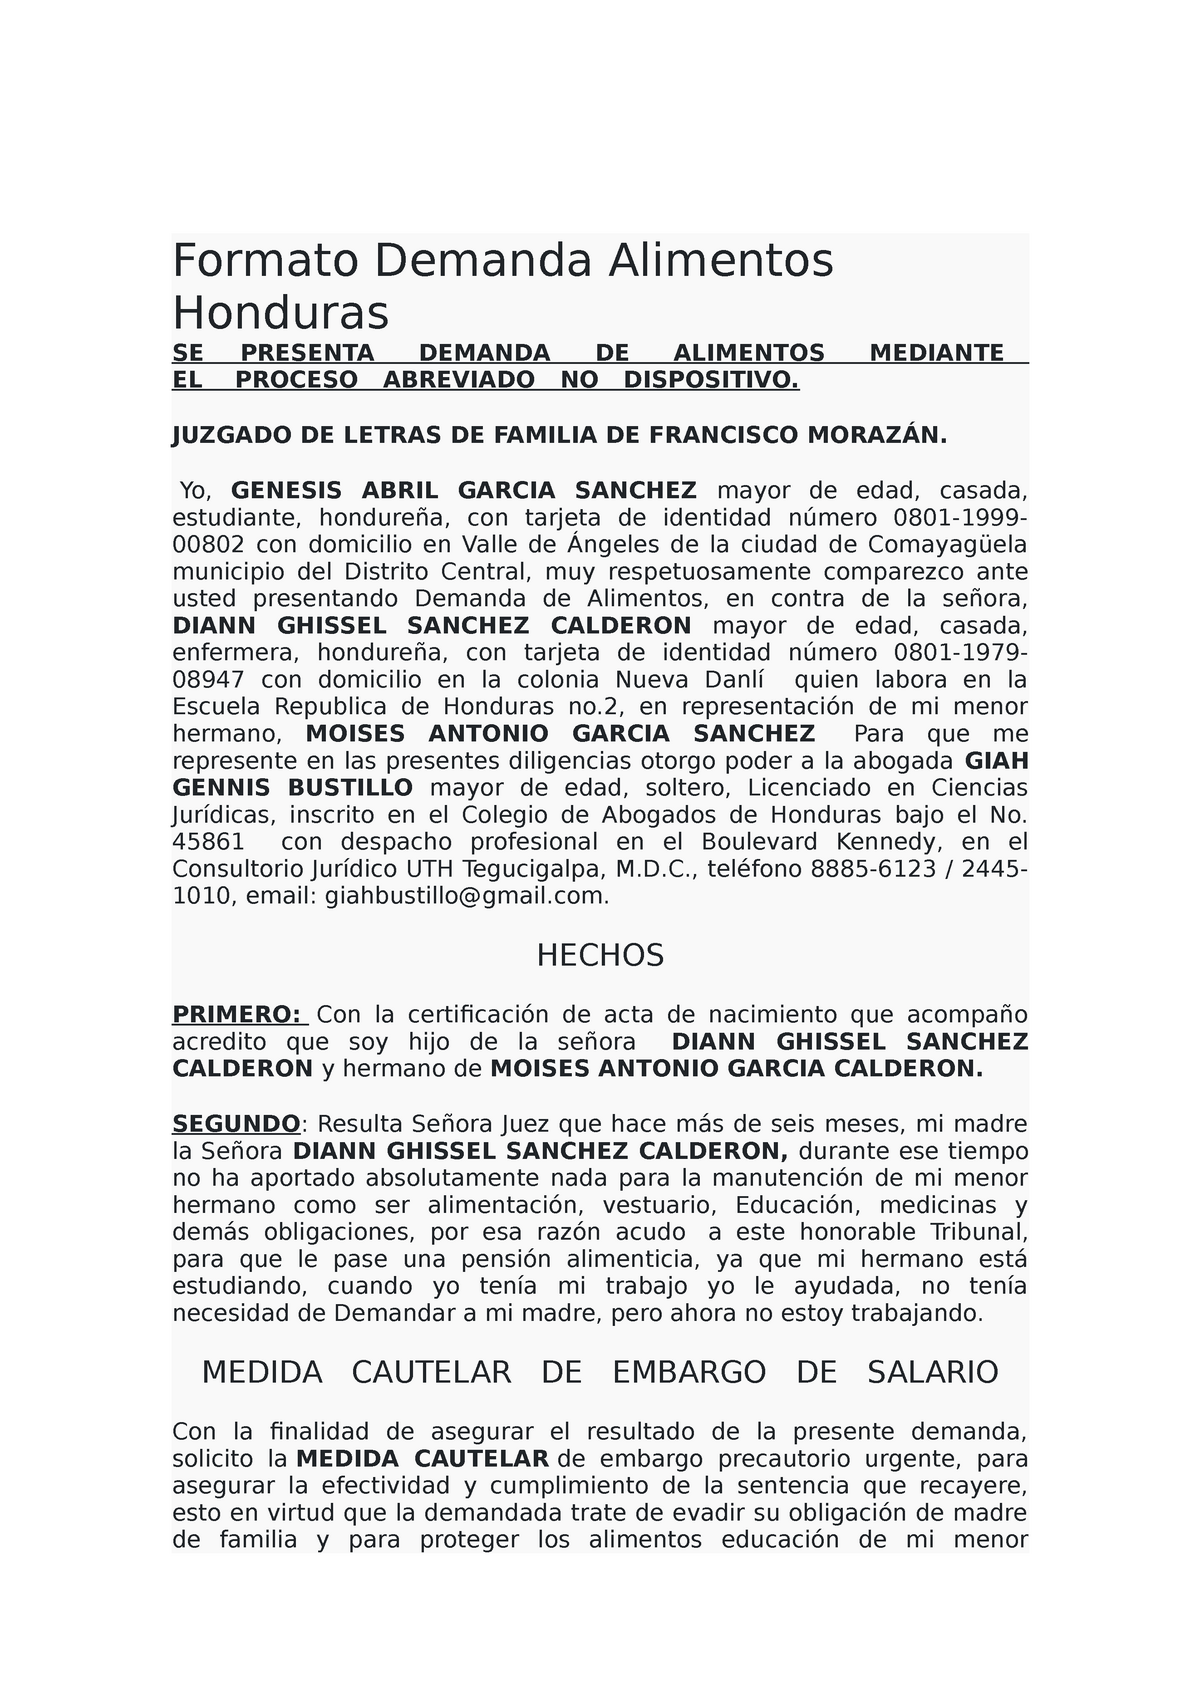 Formato Demanda Alimentos Honduras - Formato Demanda Alimentos Honduras SE  PRESENTA DEMANDA DE - Studocu